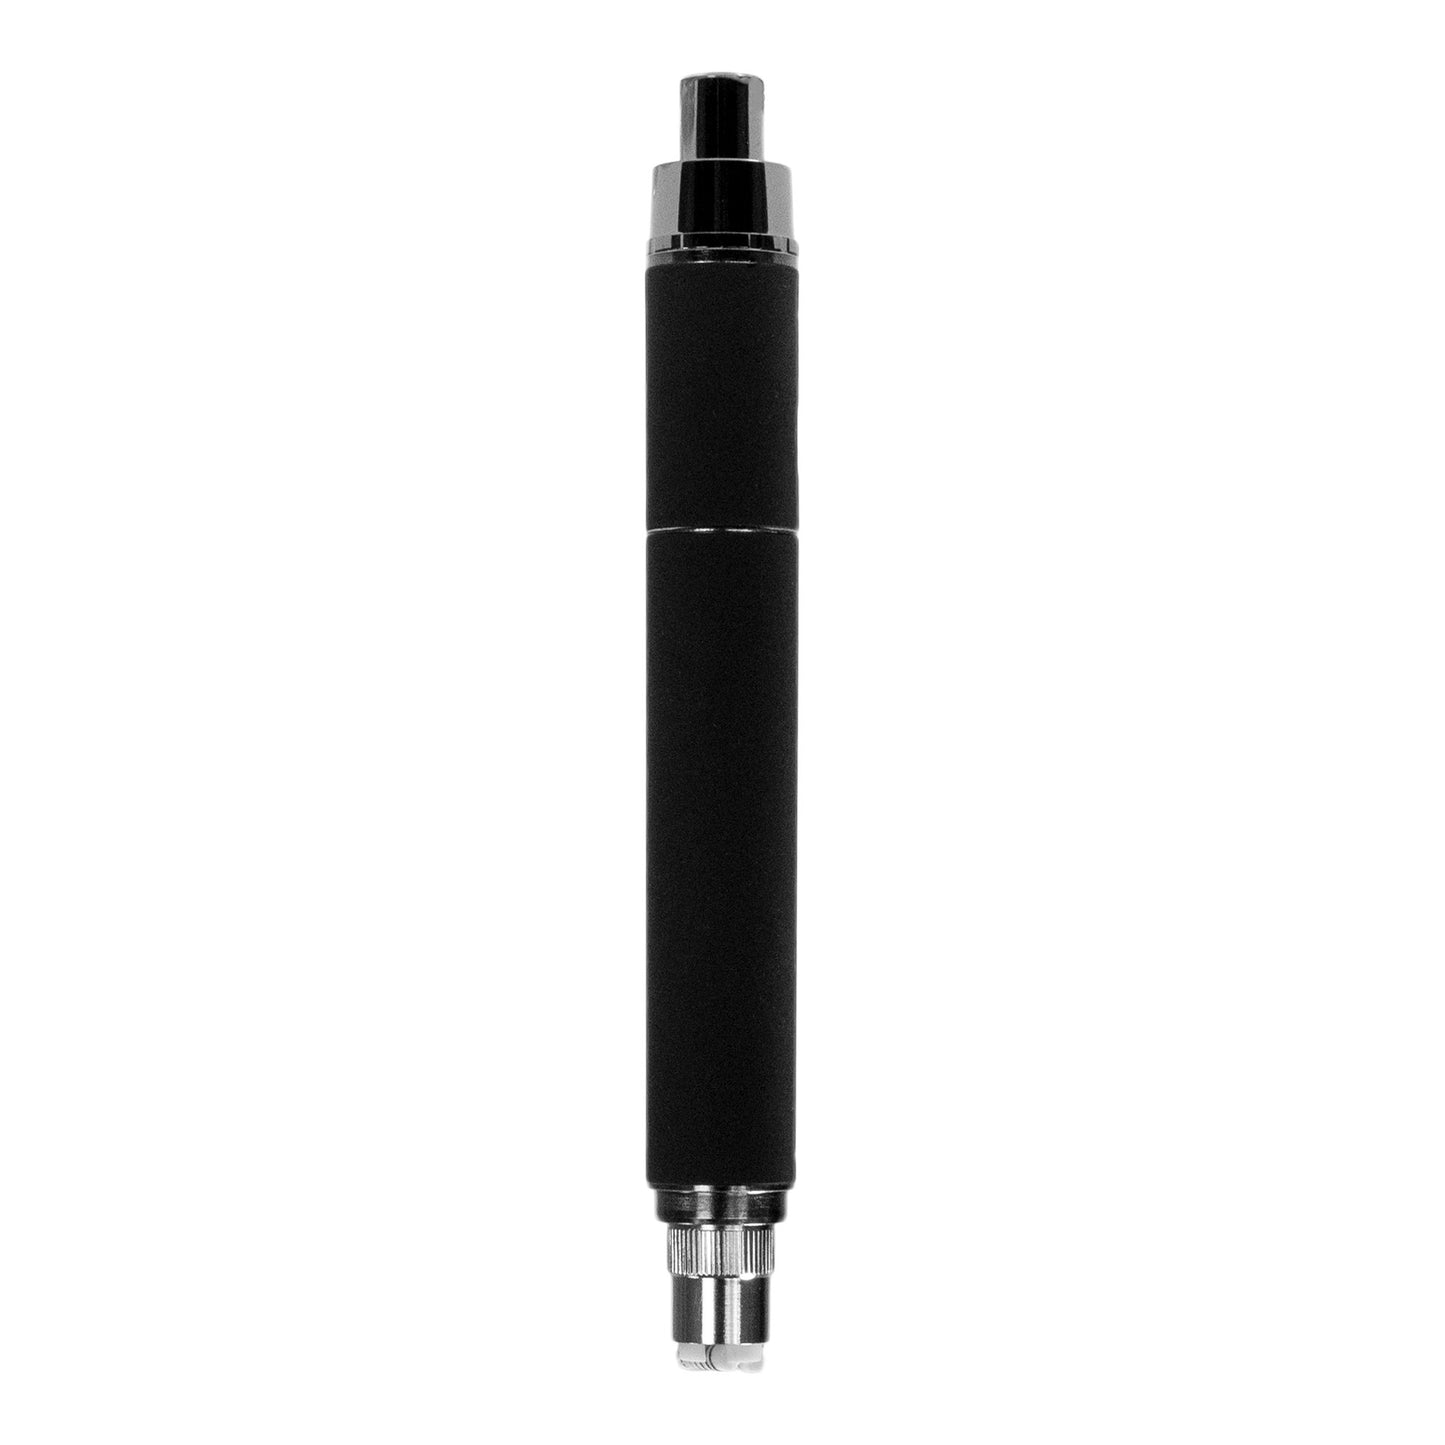 Terp Pen XL Vaporizers boundless tech Black 